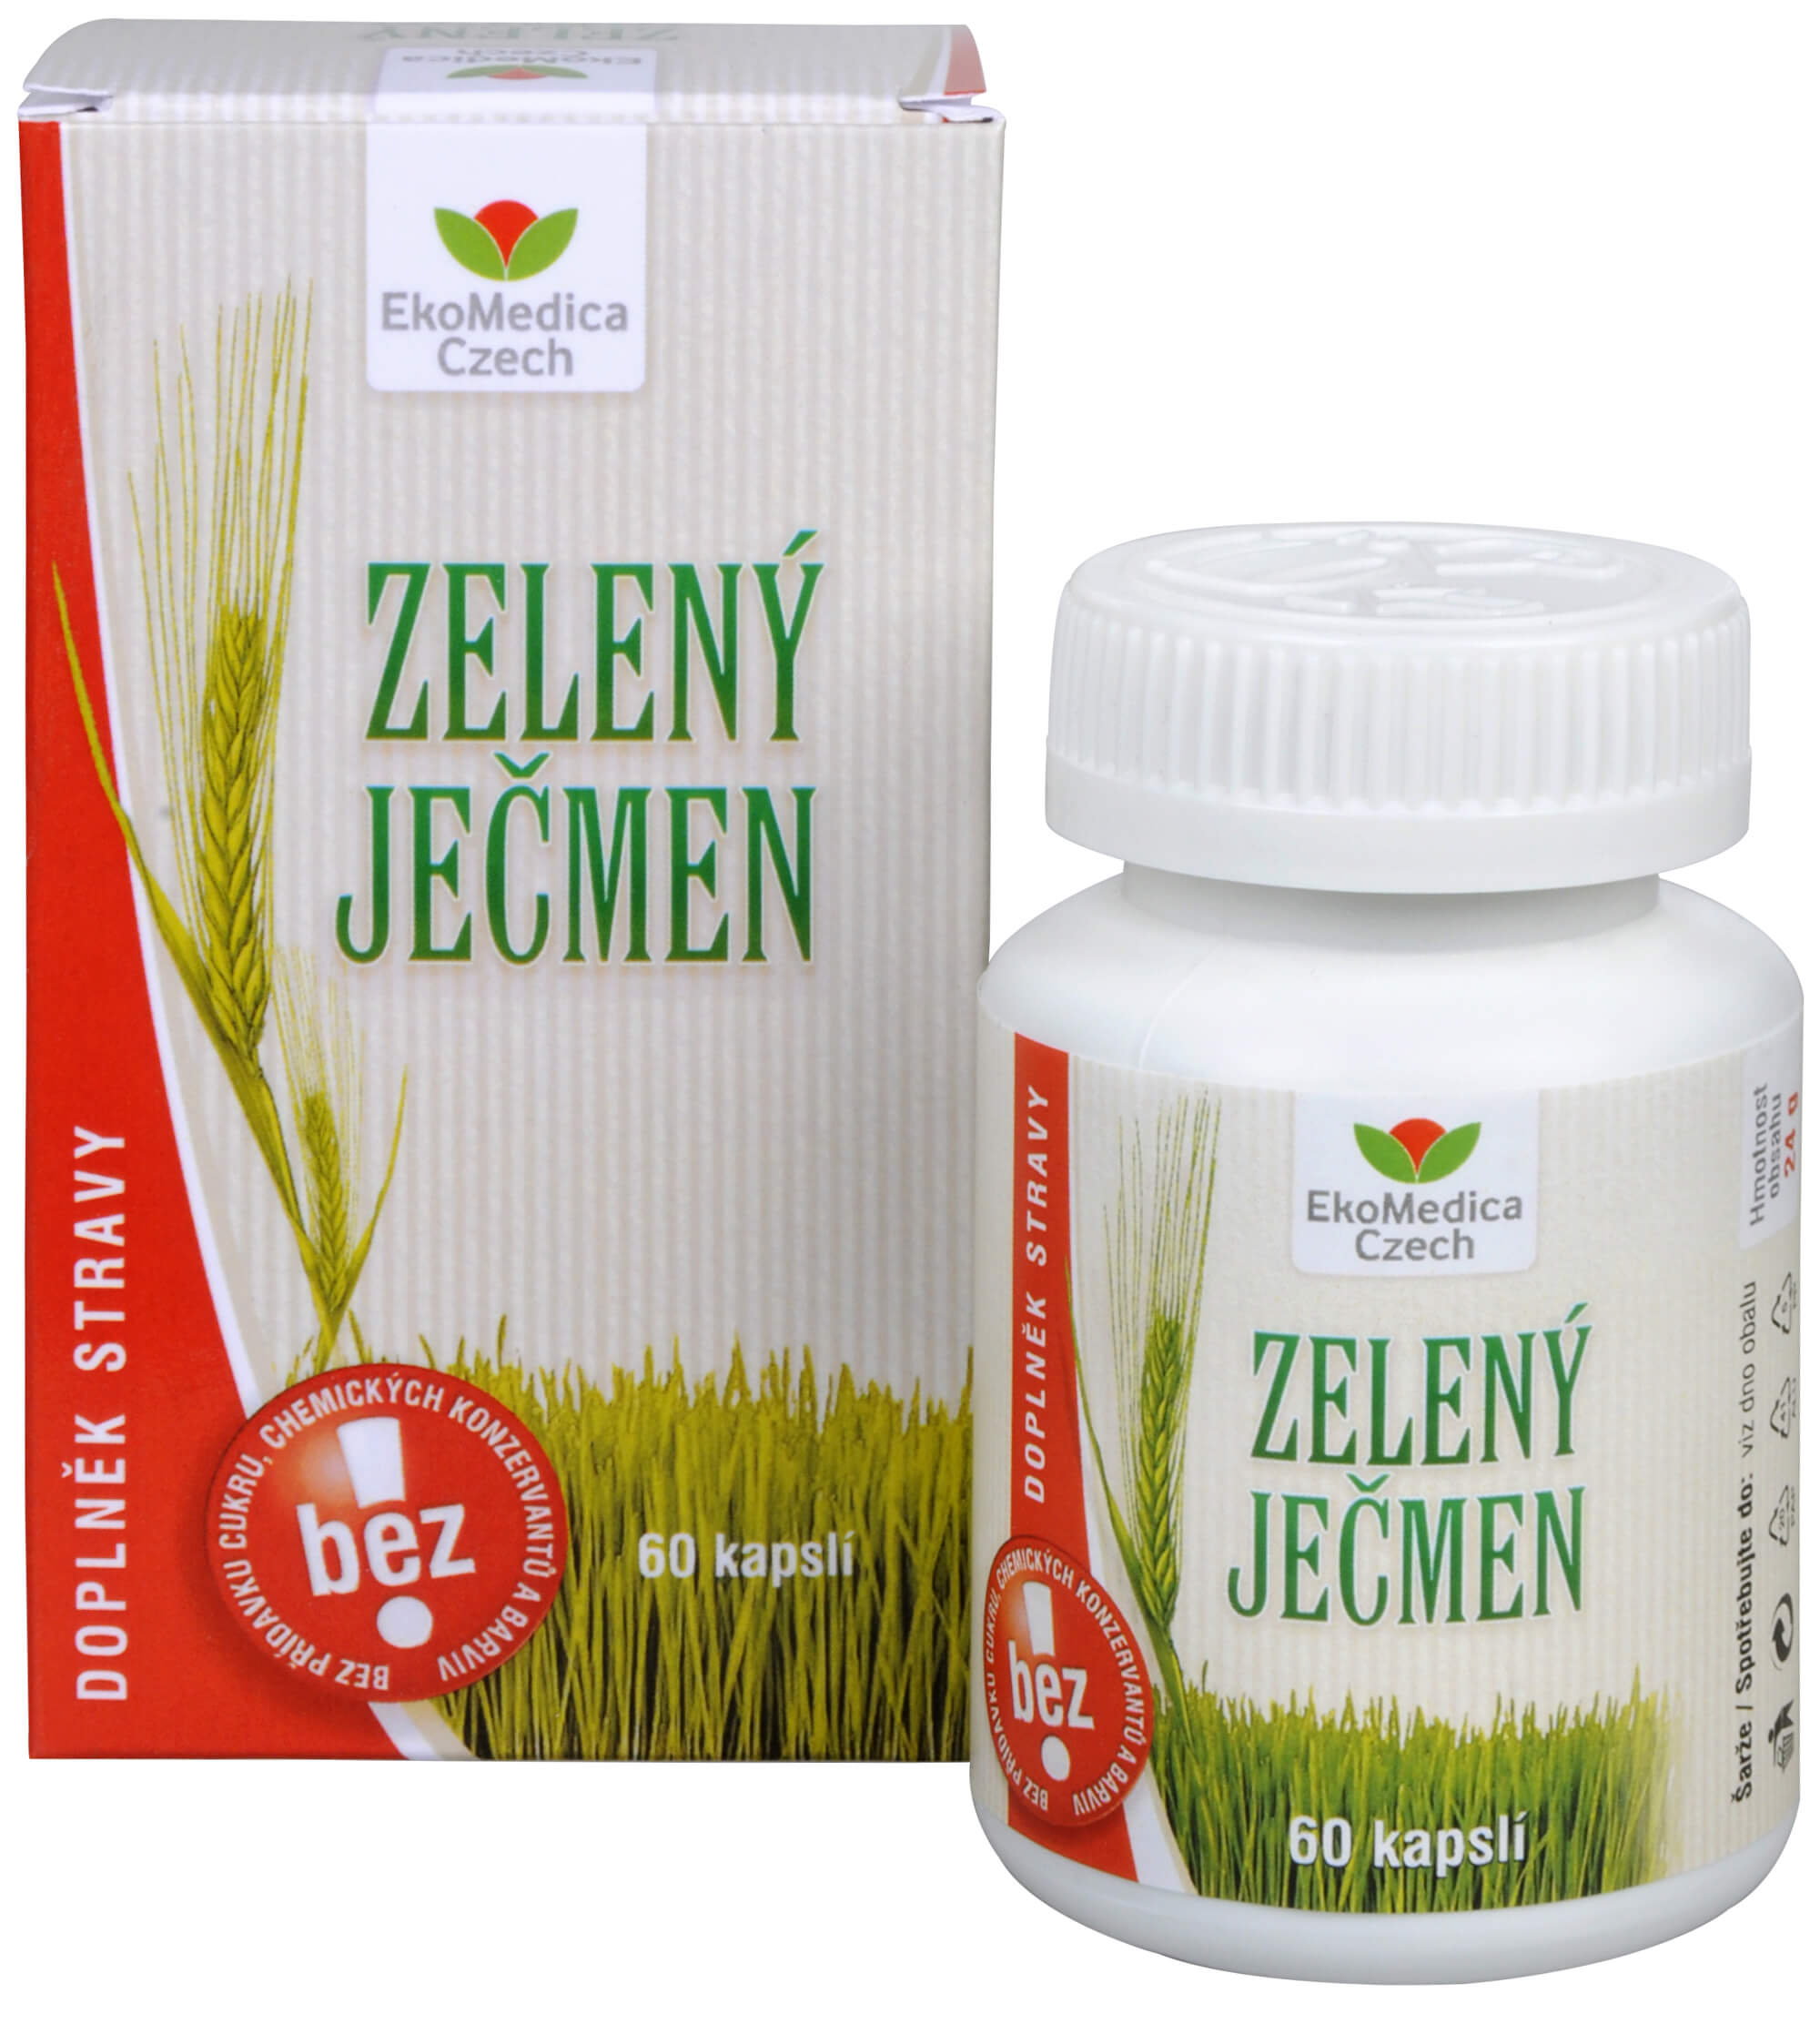 Zobrazit detail výrobku EkoMedica Czech Zelený ječmen 60 kapslí + 2 měsíce na vrácení zboží